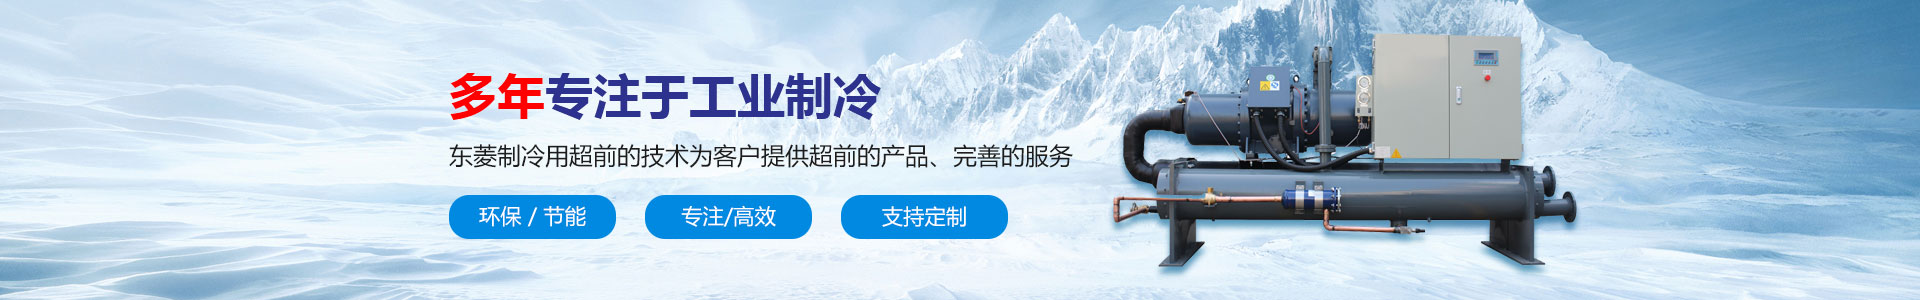 深圳市东菱制冷设备有限公司_水冷式冷水机